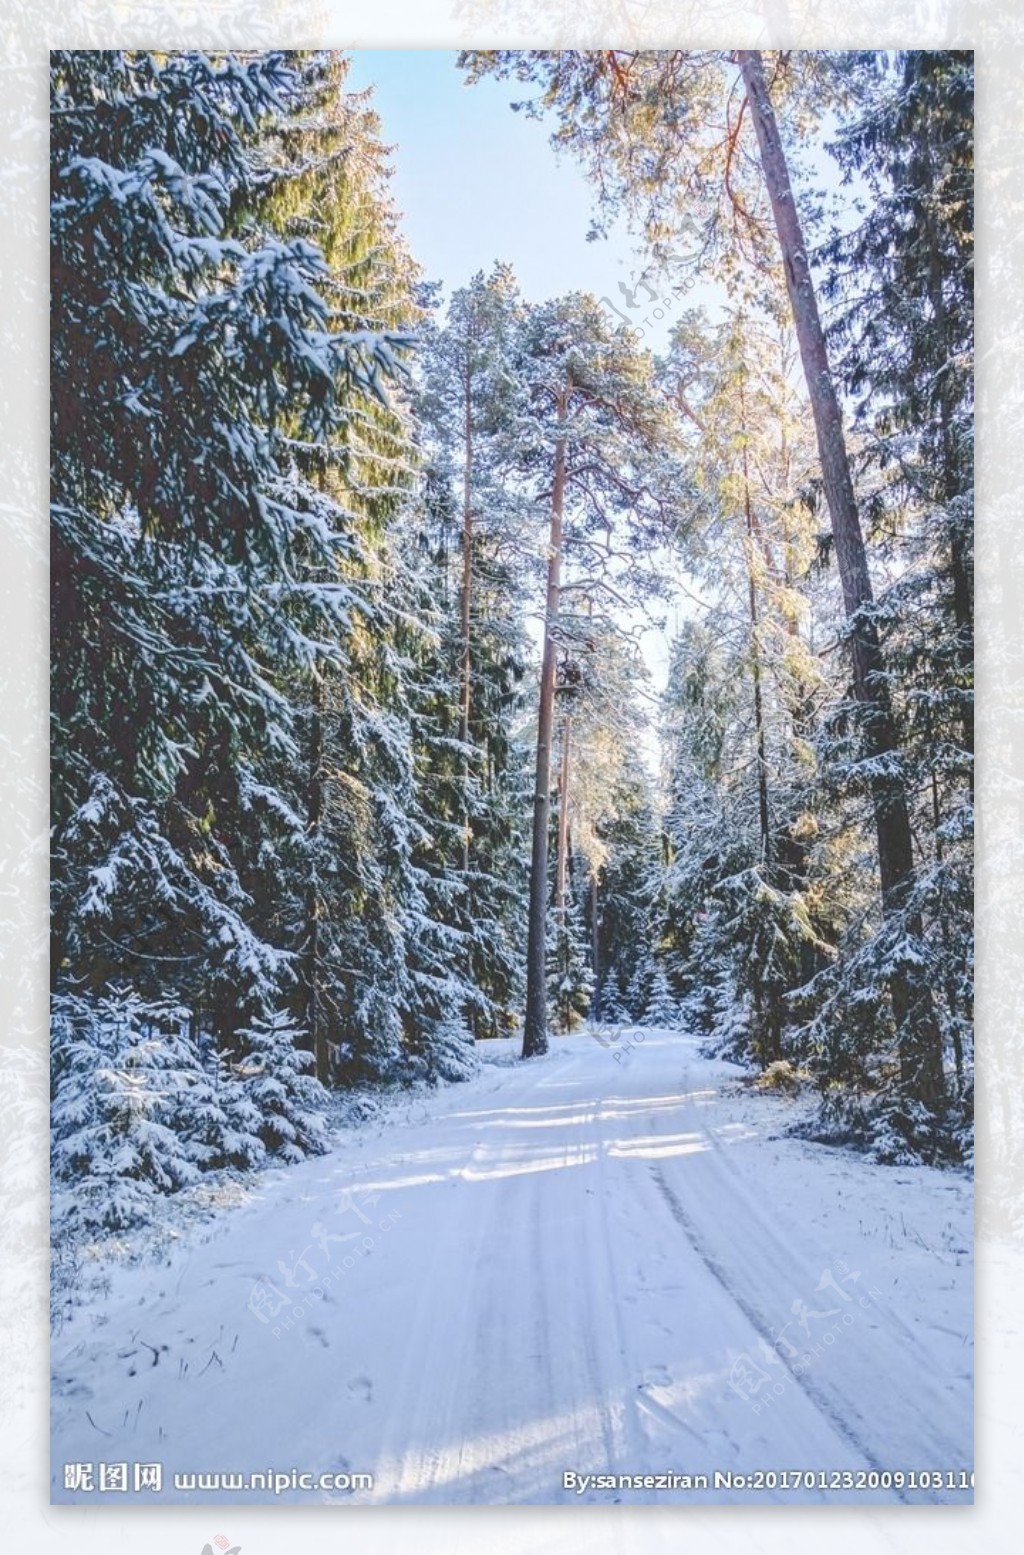 白雪覆盖的林间小路